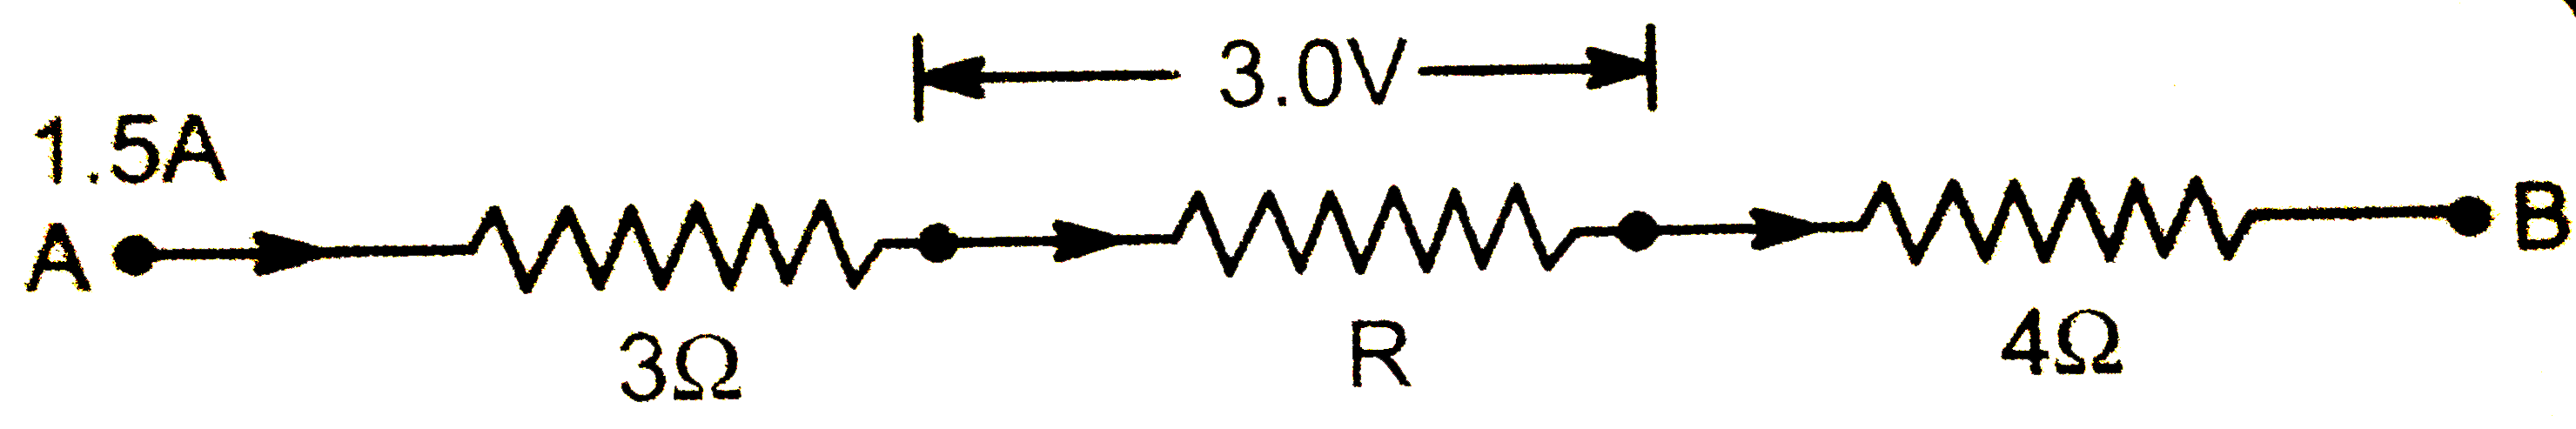 सलंग्न विद्युत परिपथ में 1.5 ऐम्पियर की धारा प्रवाहित हो रही है       ज्ञात कीजिए - (i ) प्रतिरोध R  का मान (ii ) A व B  के बीच विभान्तर |